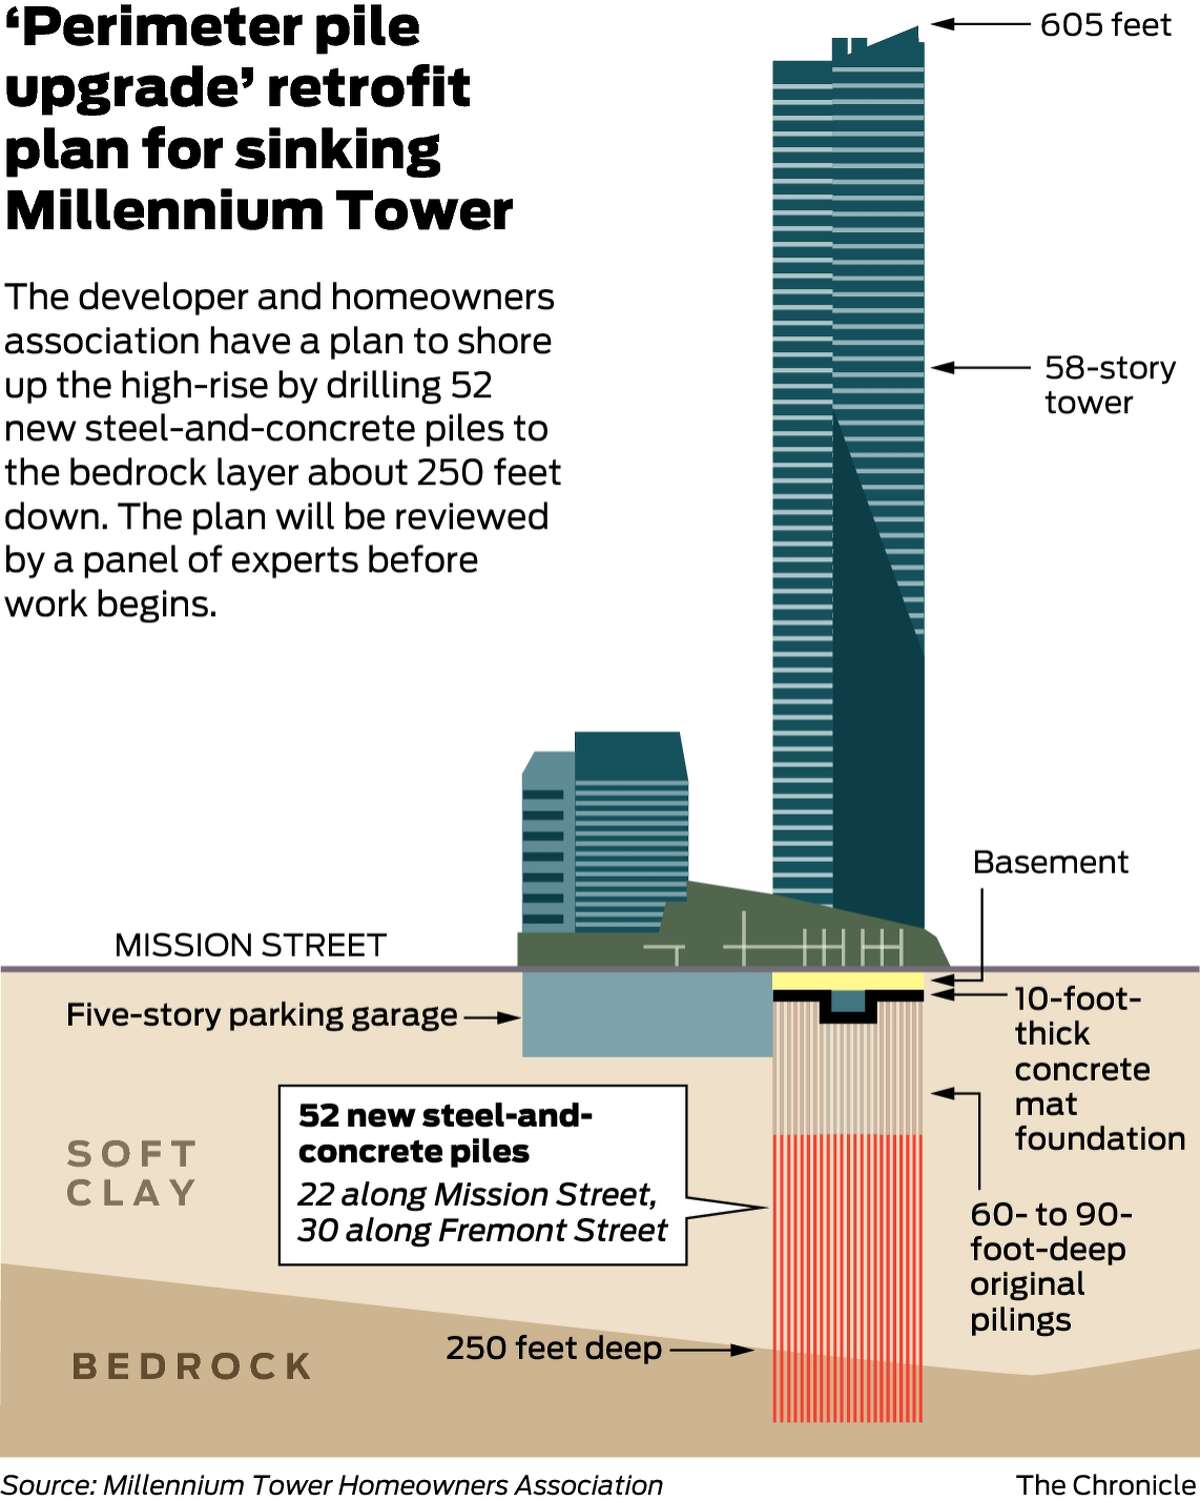 sf millennium tower sinking